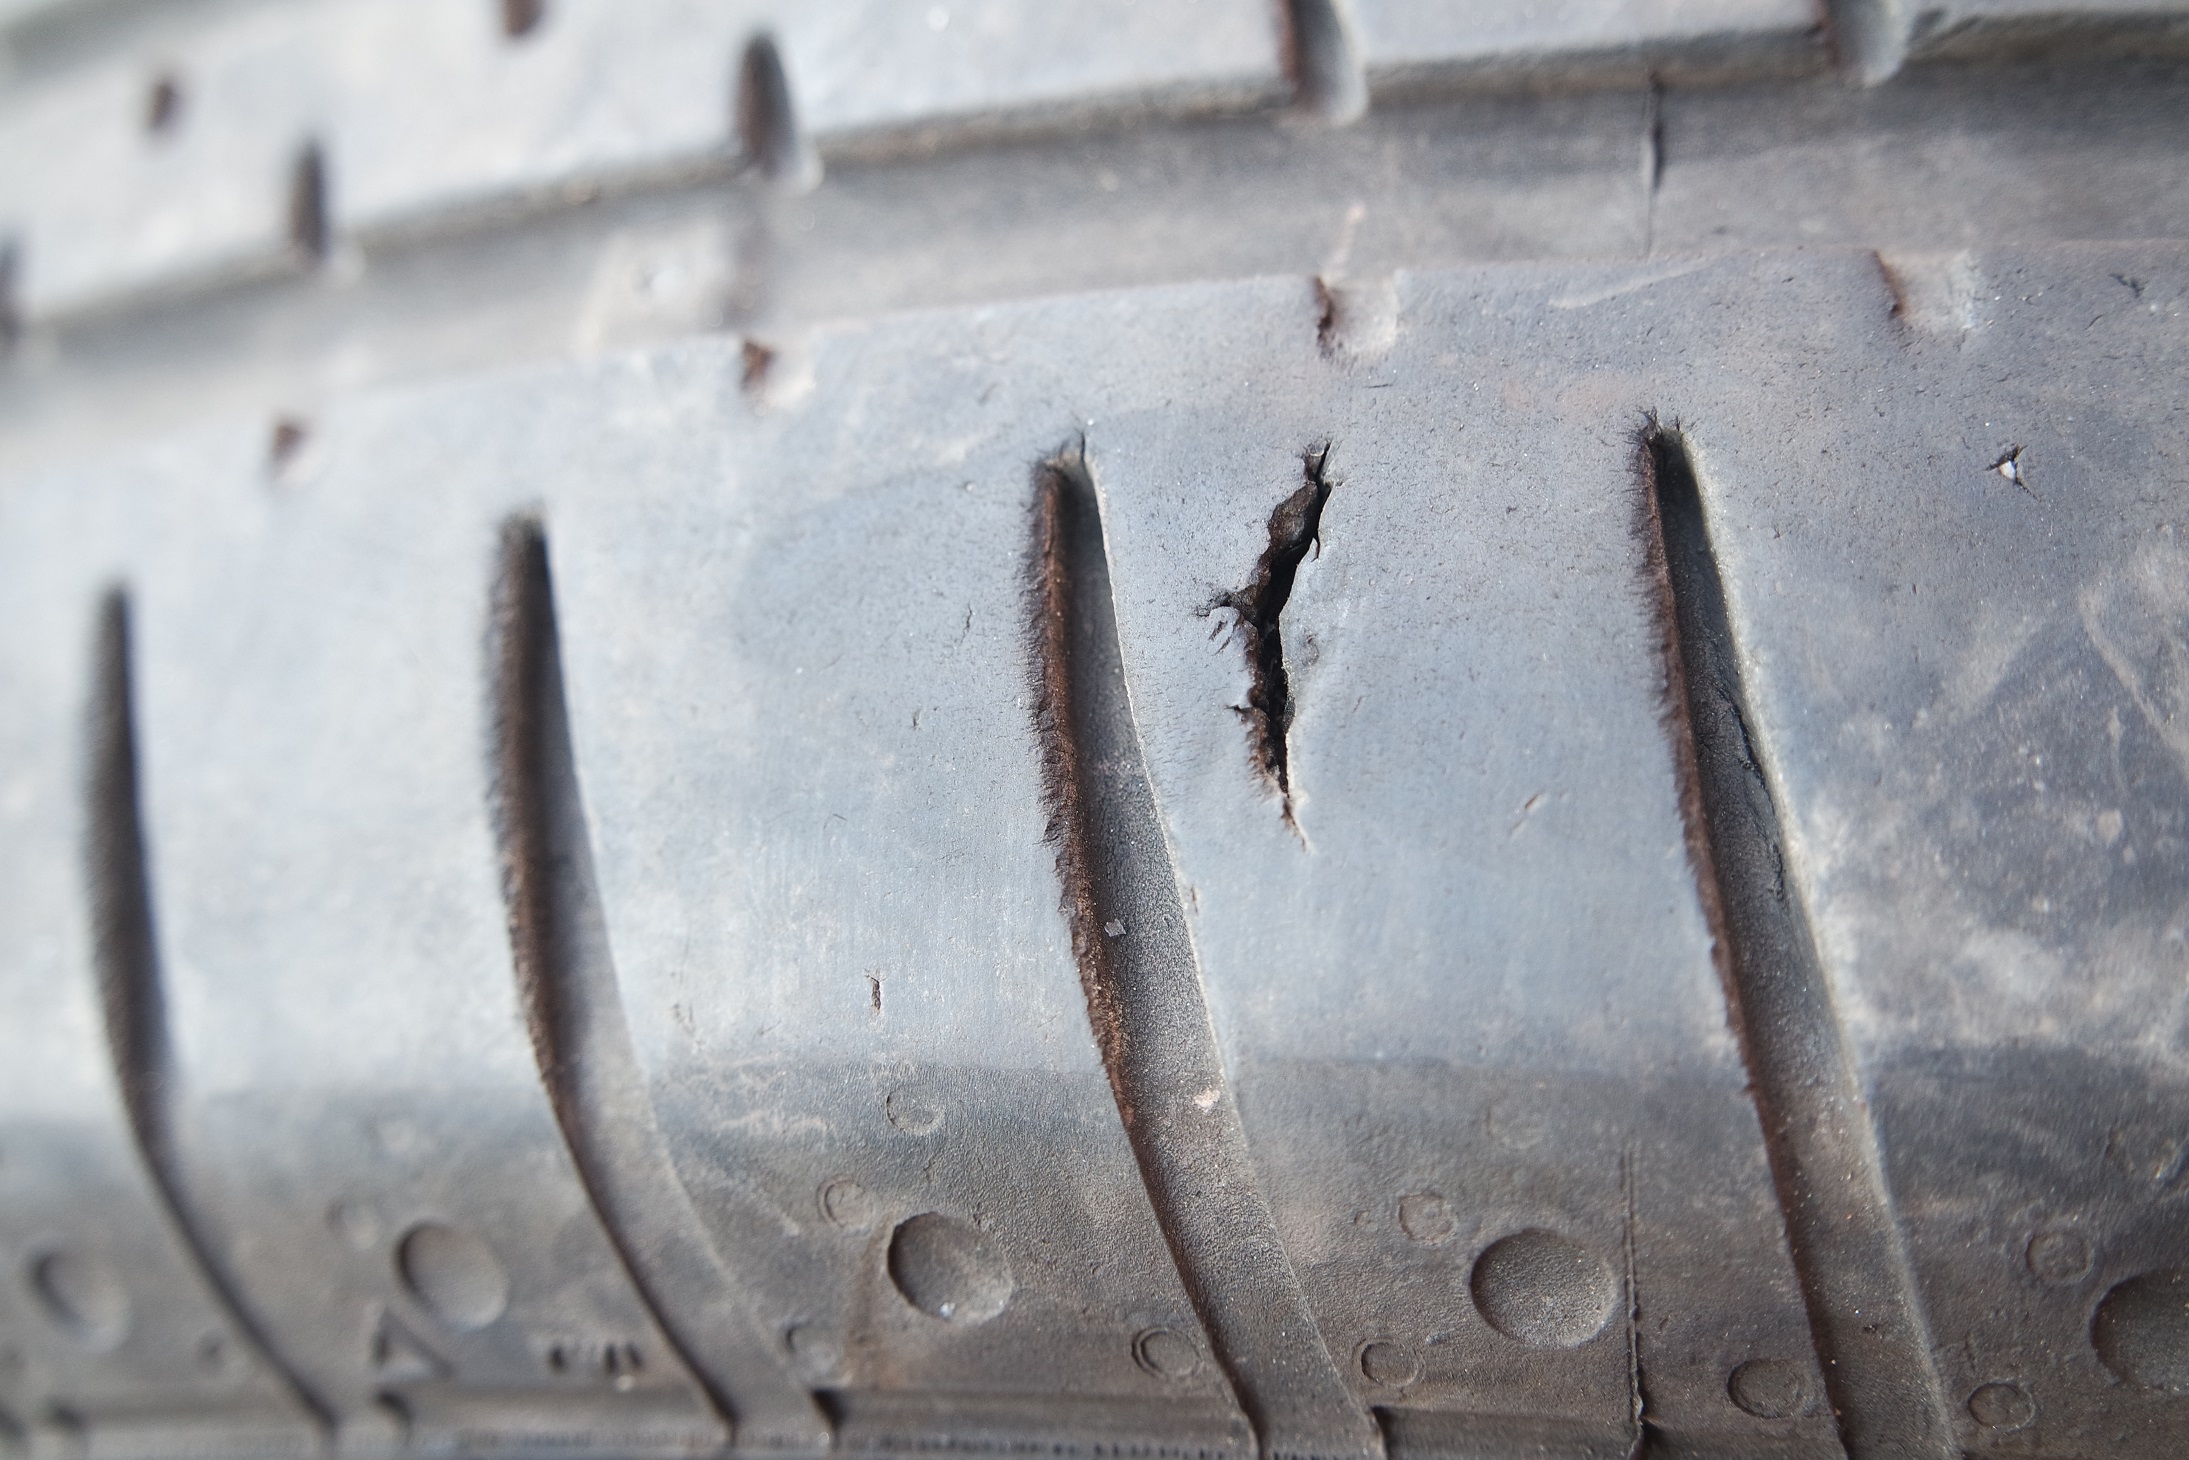 Part-worn tyres